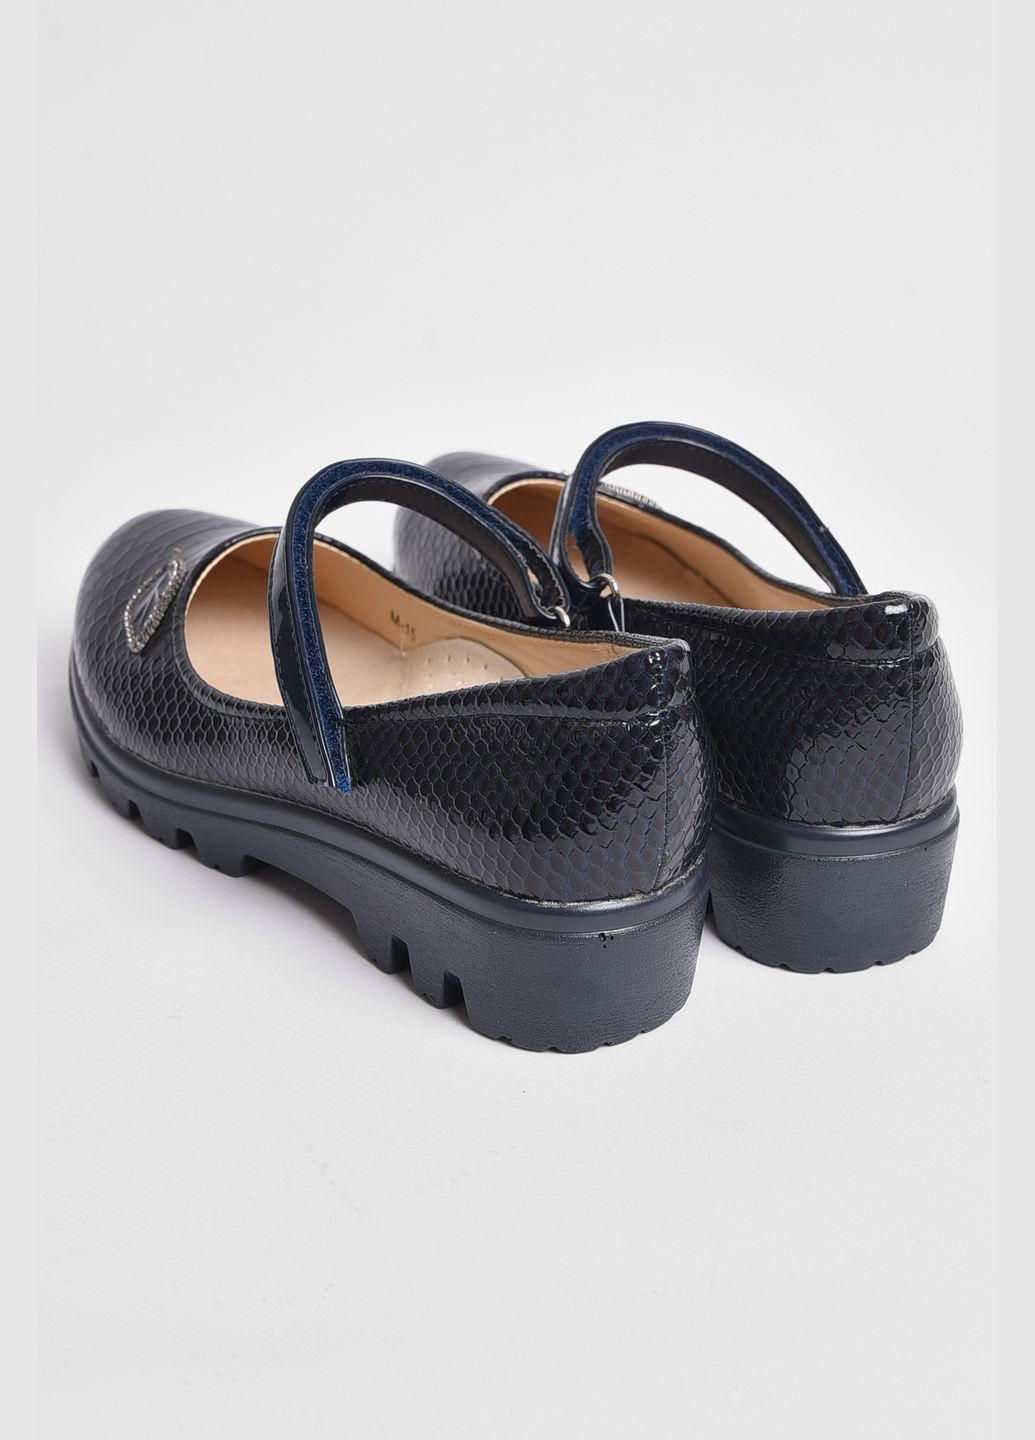 Темно-синие туфли детские для девочки темно-синего цвета без шнурков Let's Shop